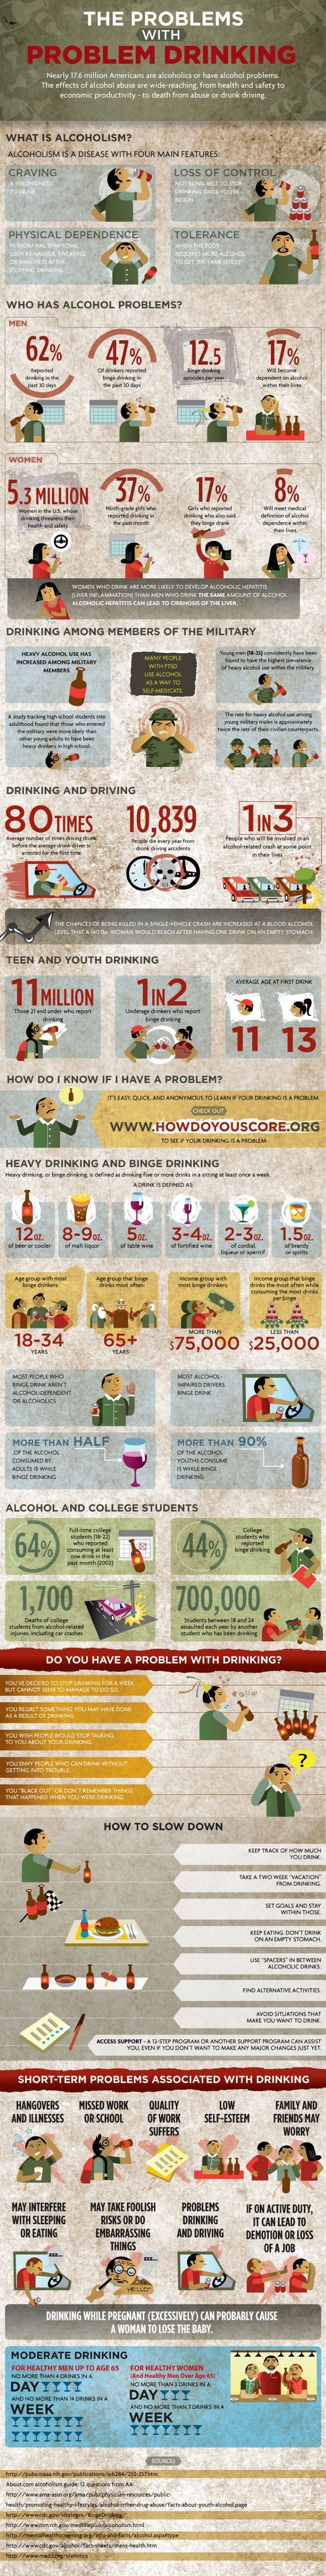 Les effets nocifs de la consommation d'alcool